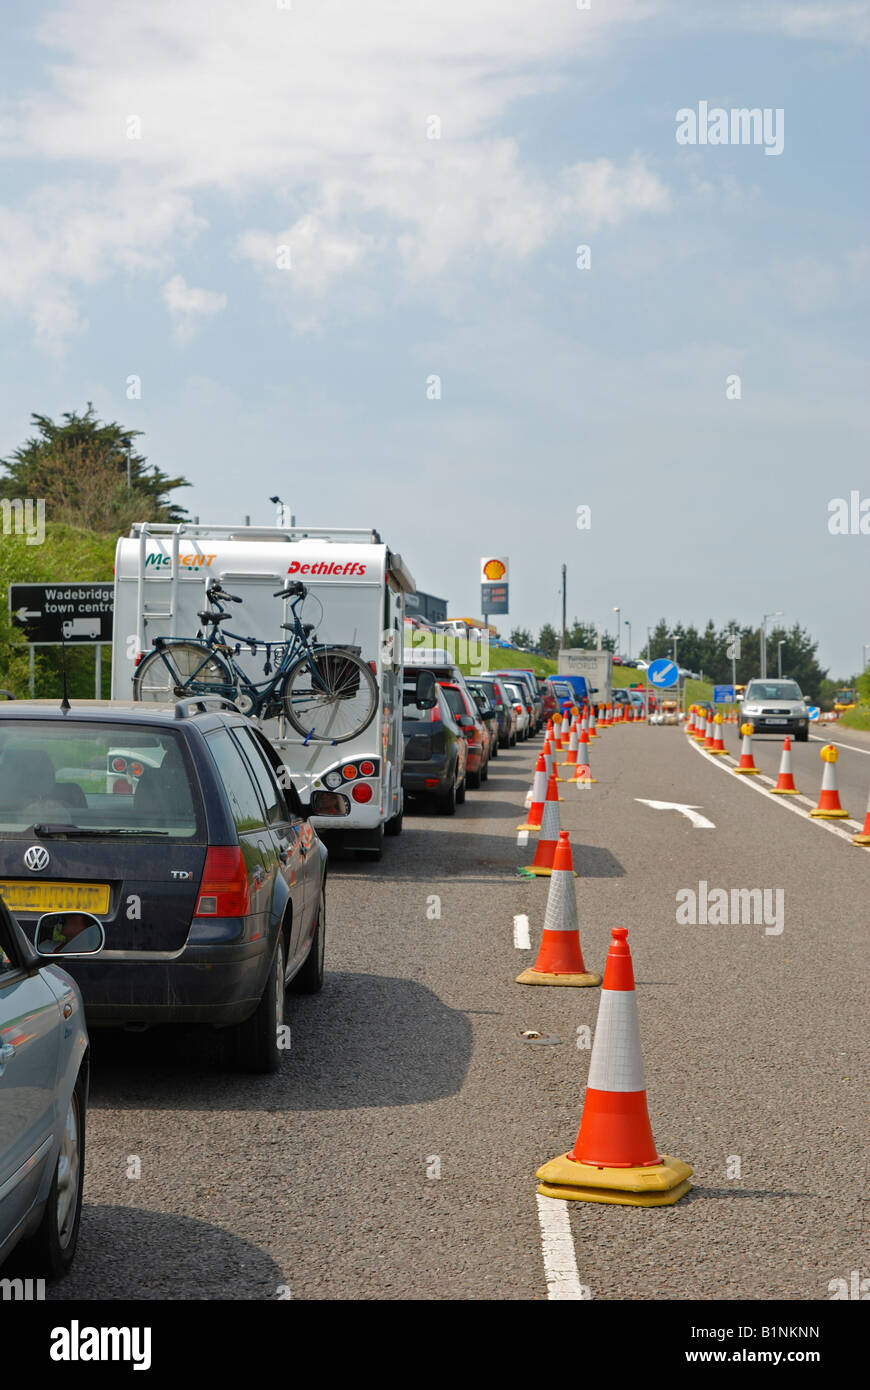 Un été embouteillage près de Padstow à Cornwall, Angleterre, Royaume-Uni Banque D'Images